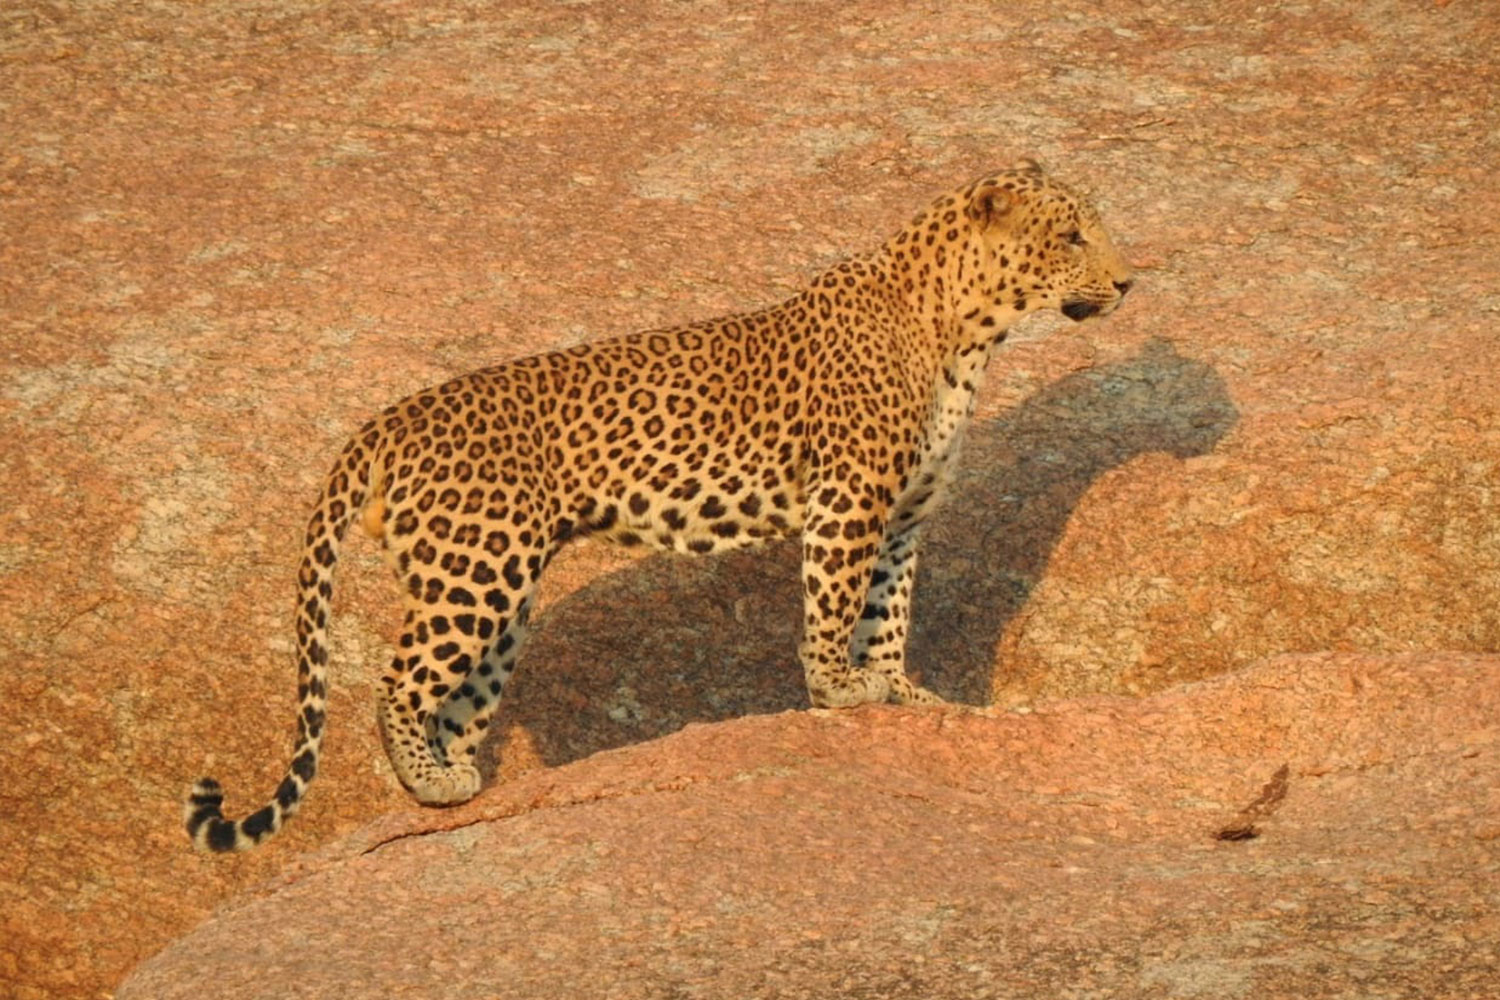 Jhalana_leopard_safari